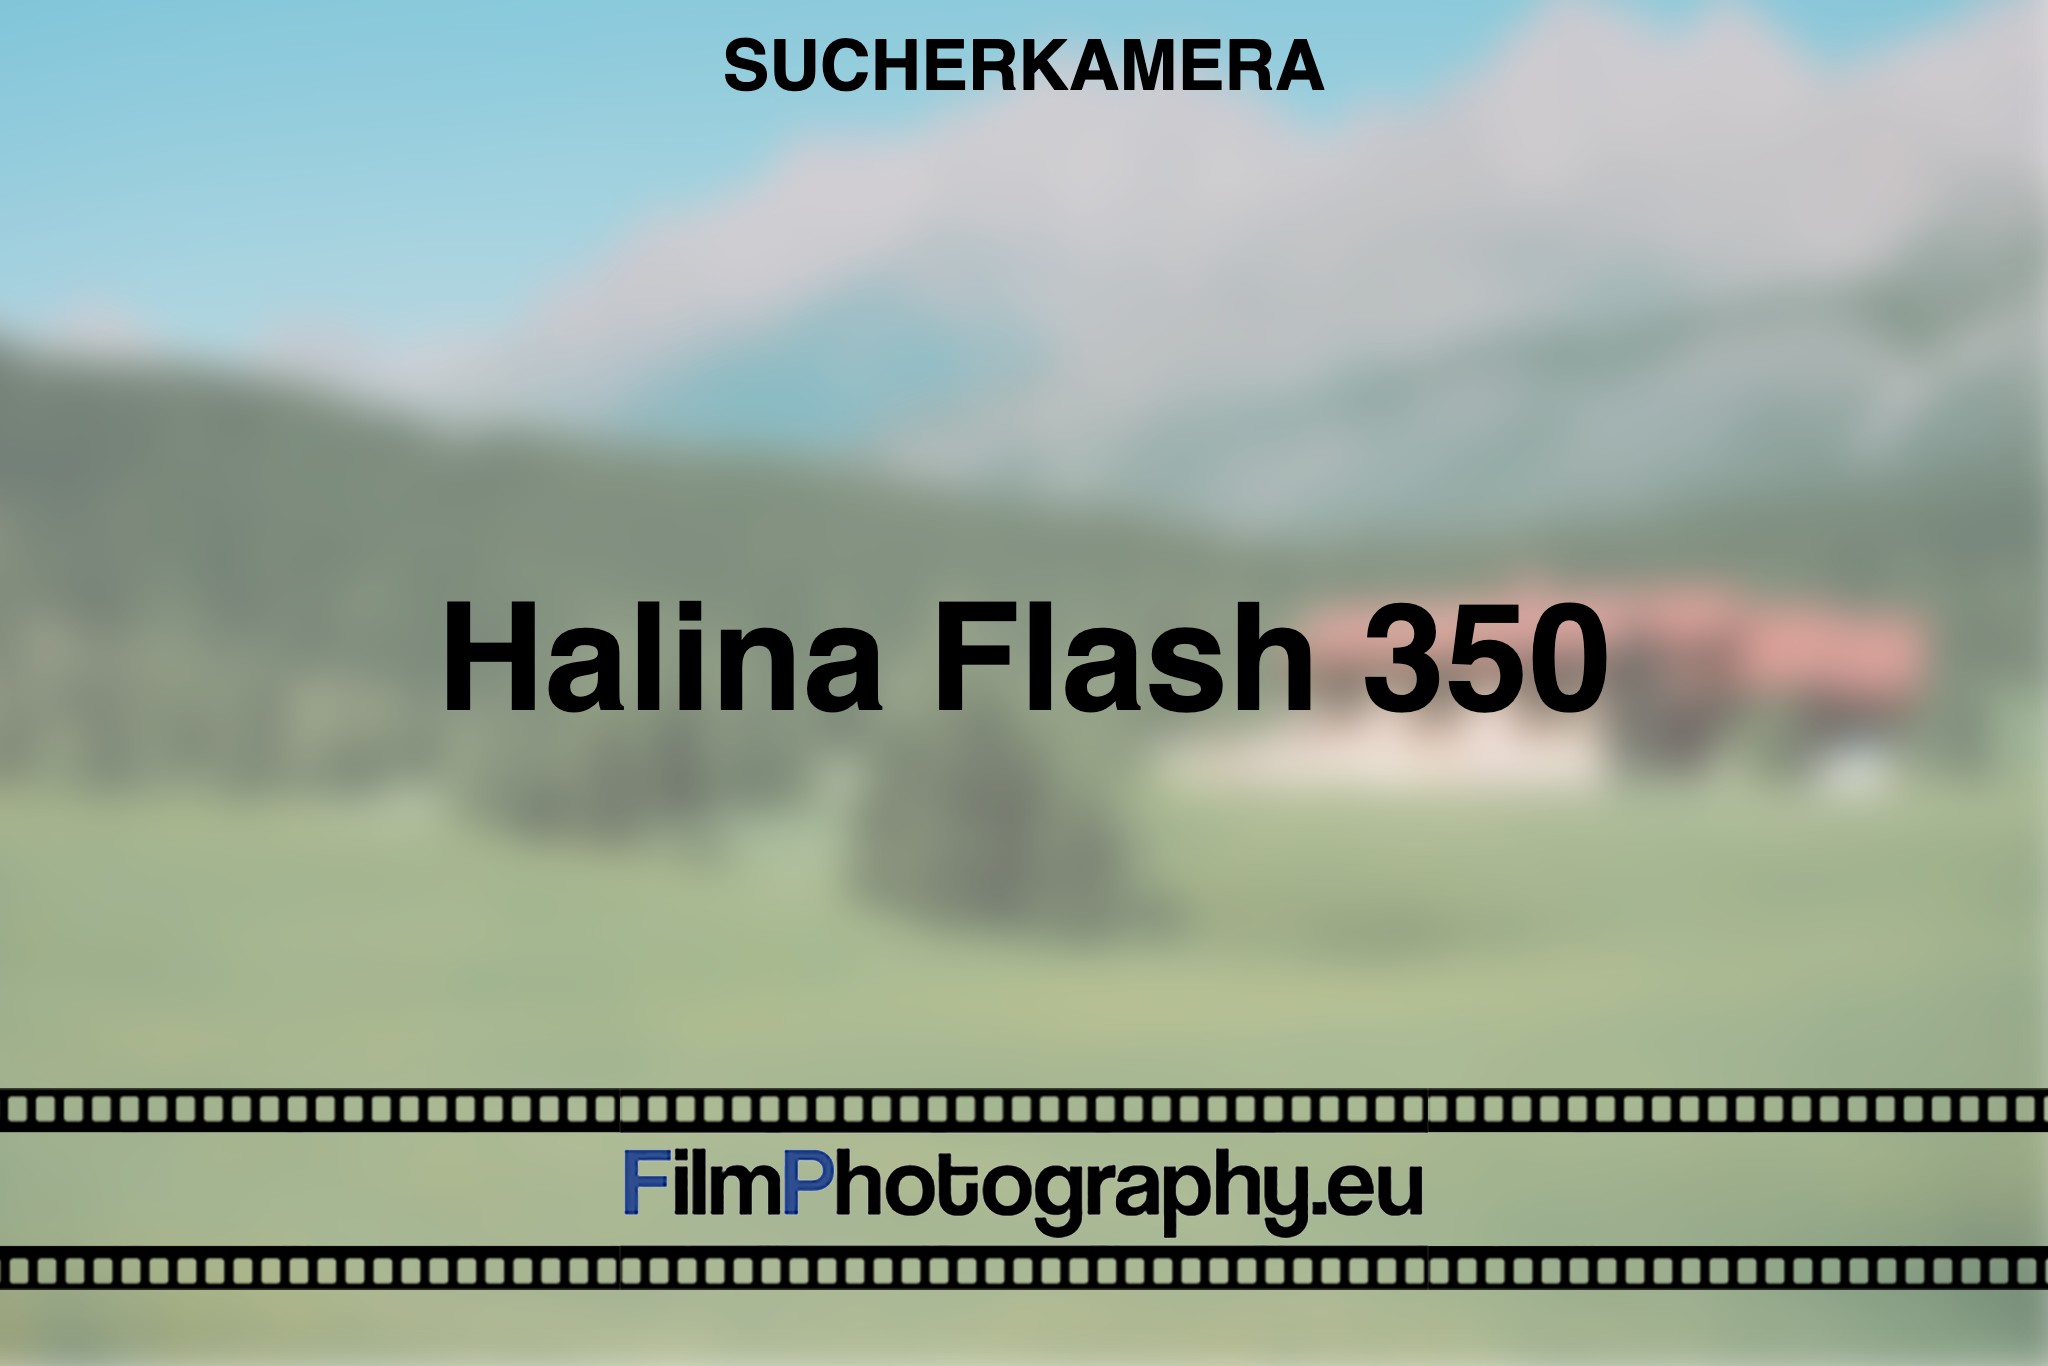 halina-flash-350-sucherkamera-bnv